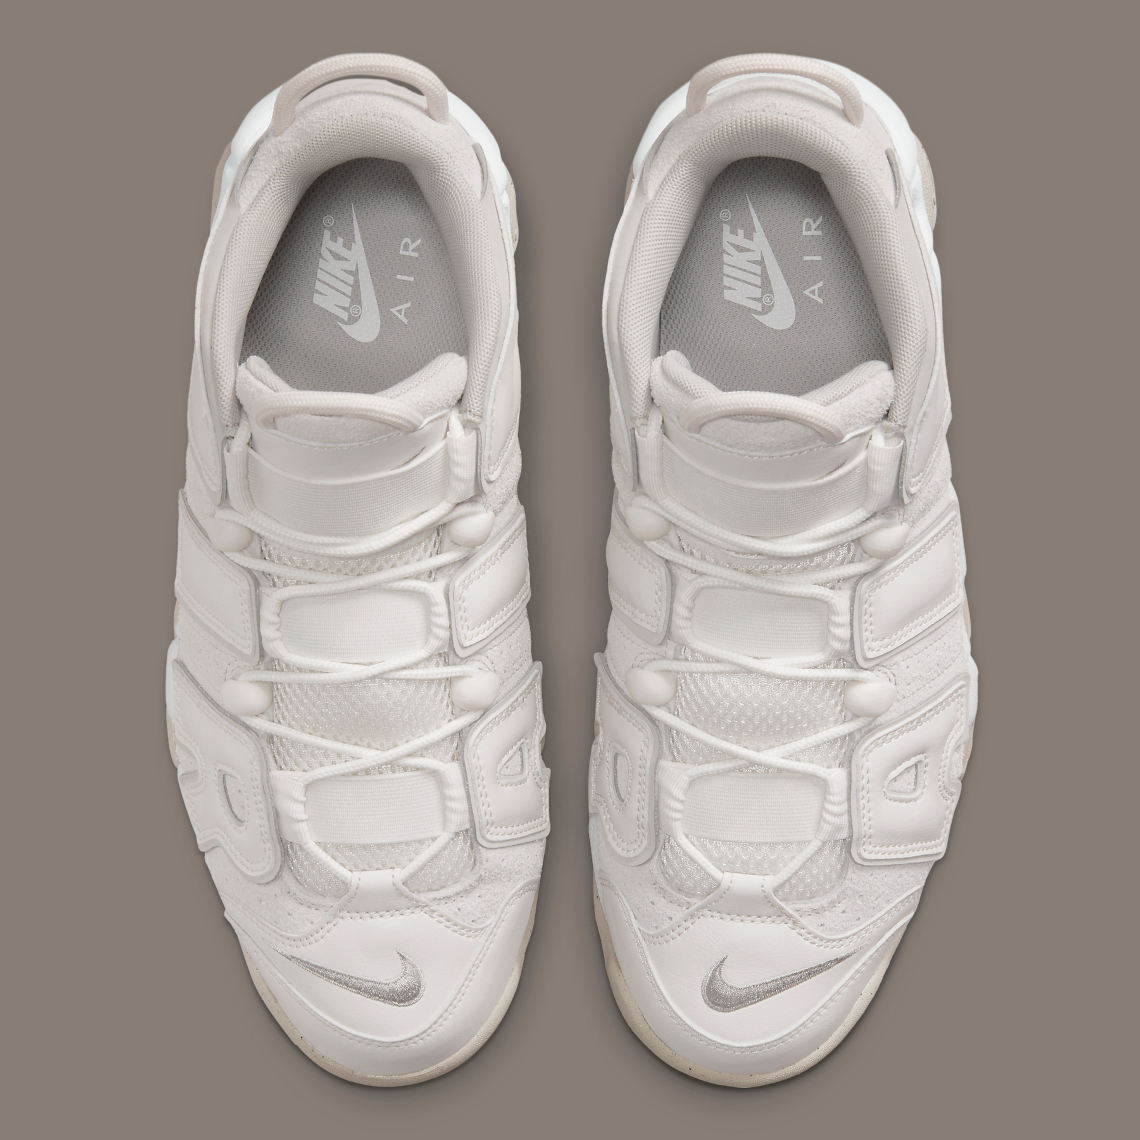 Nike Air More Uptempo "Off White/Beige" DM0581-001 SneakerNews.com